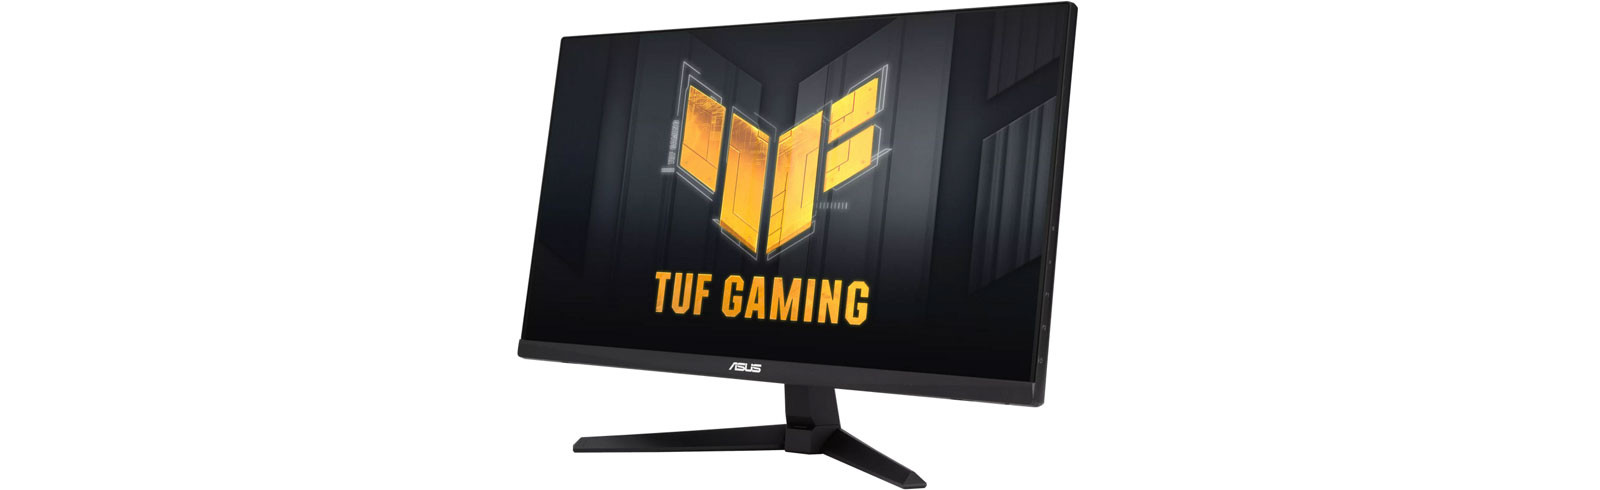 Asus trình làng bộ đôi màn hình TUF Gaming VG279Q3A và TUF Gaming VG249Q3A